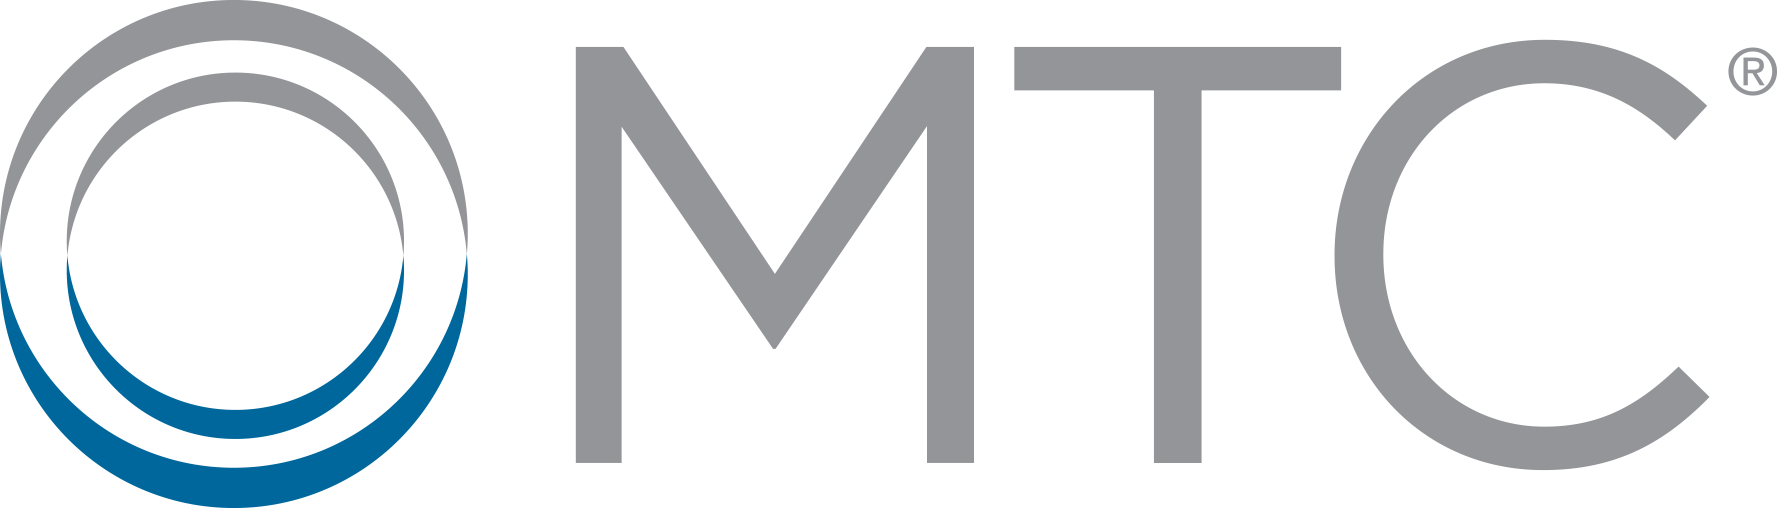 MTC Registered TM logo transparent